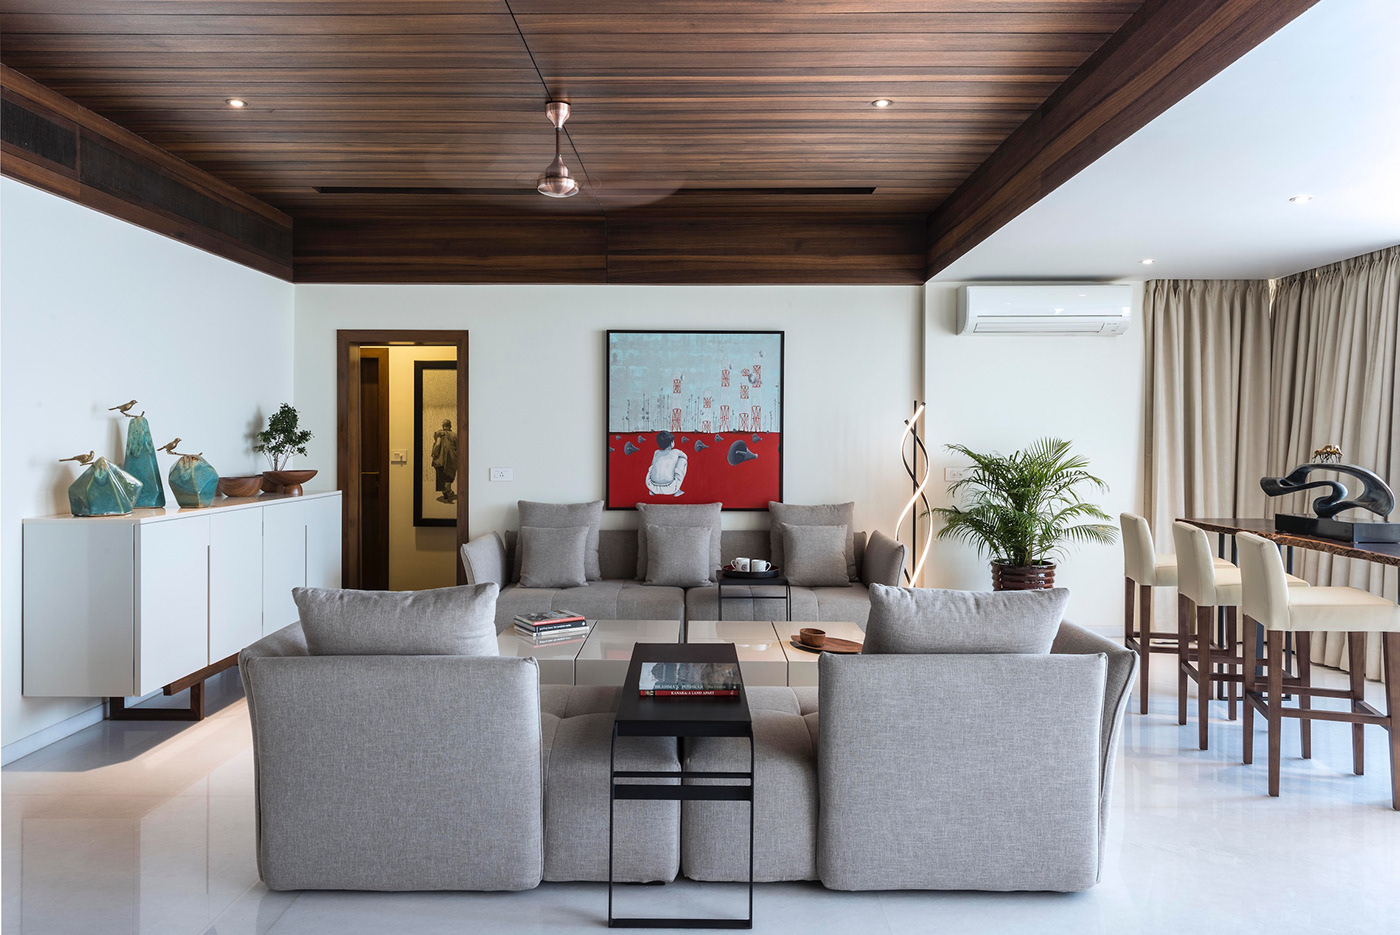 indoor architecture interior design  Render modern vray exterior visualization 3D